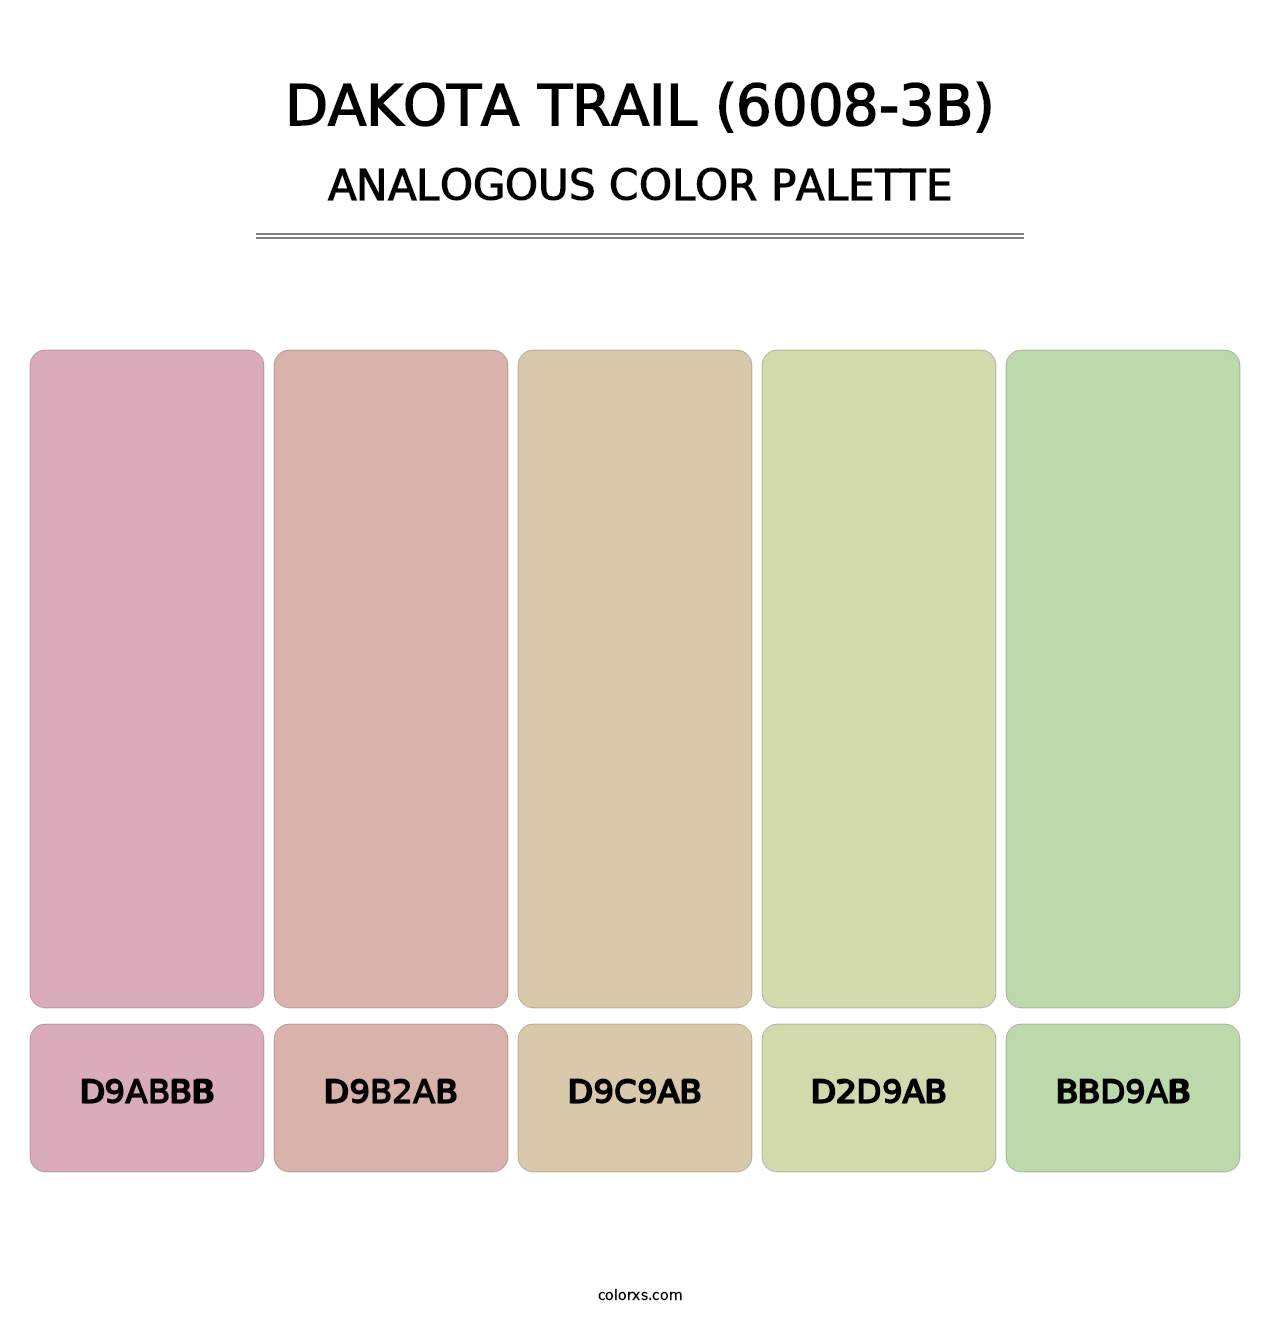 Dakota Trail (6008-3B) - Analogous Color Palette